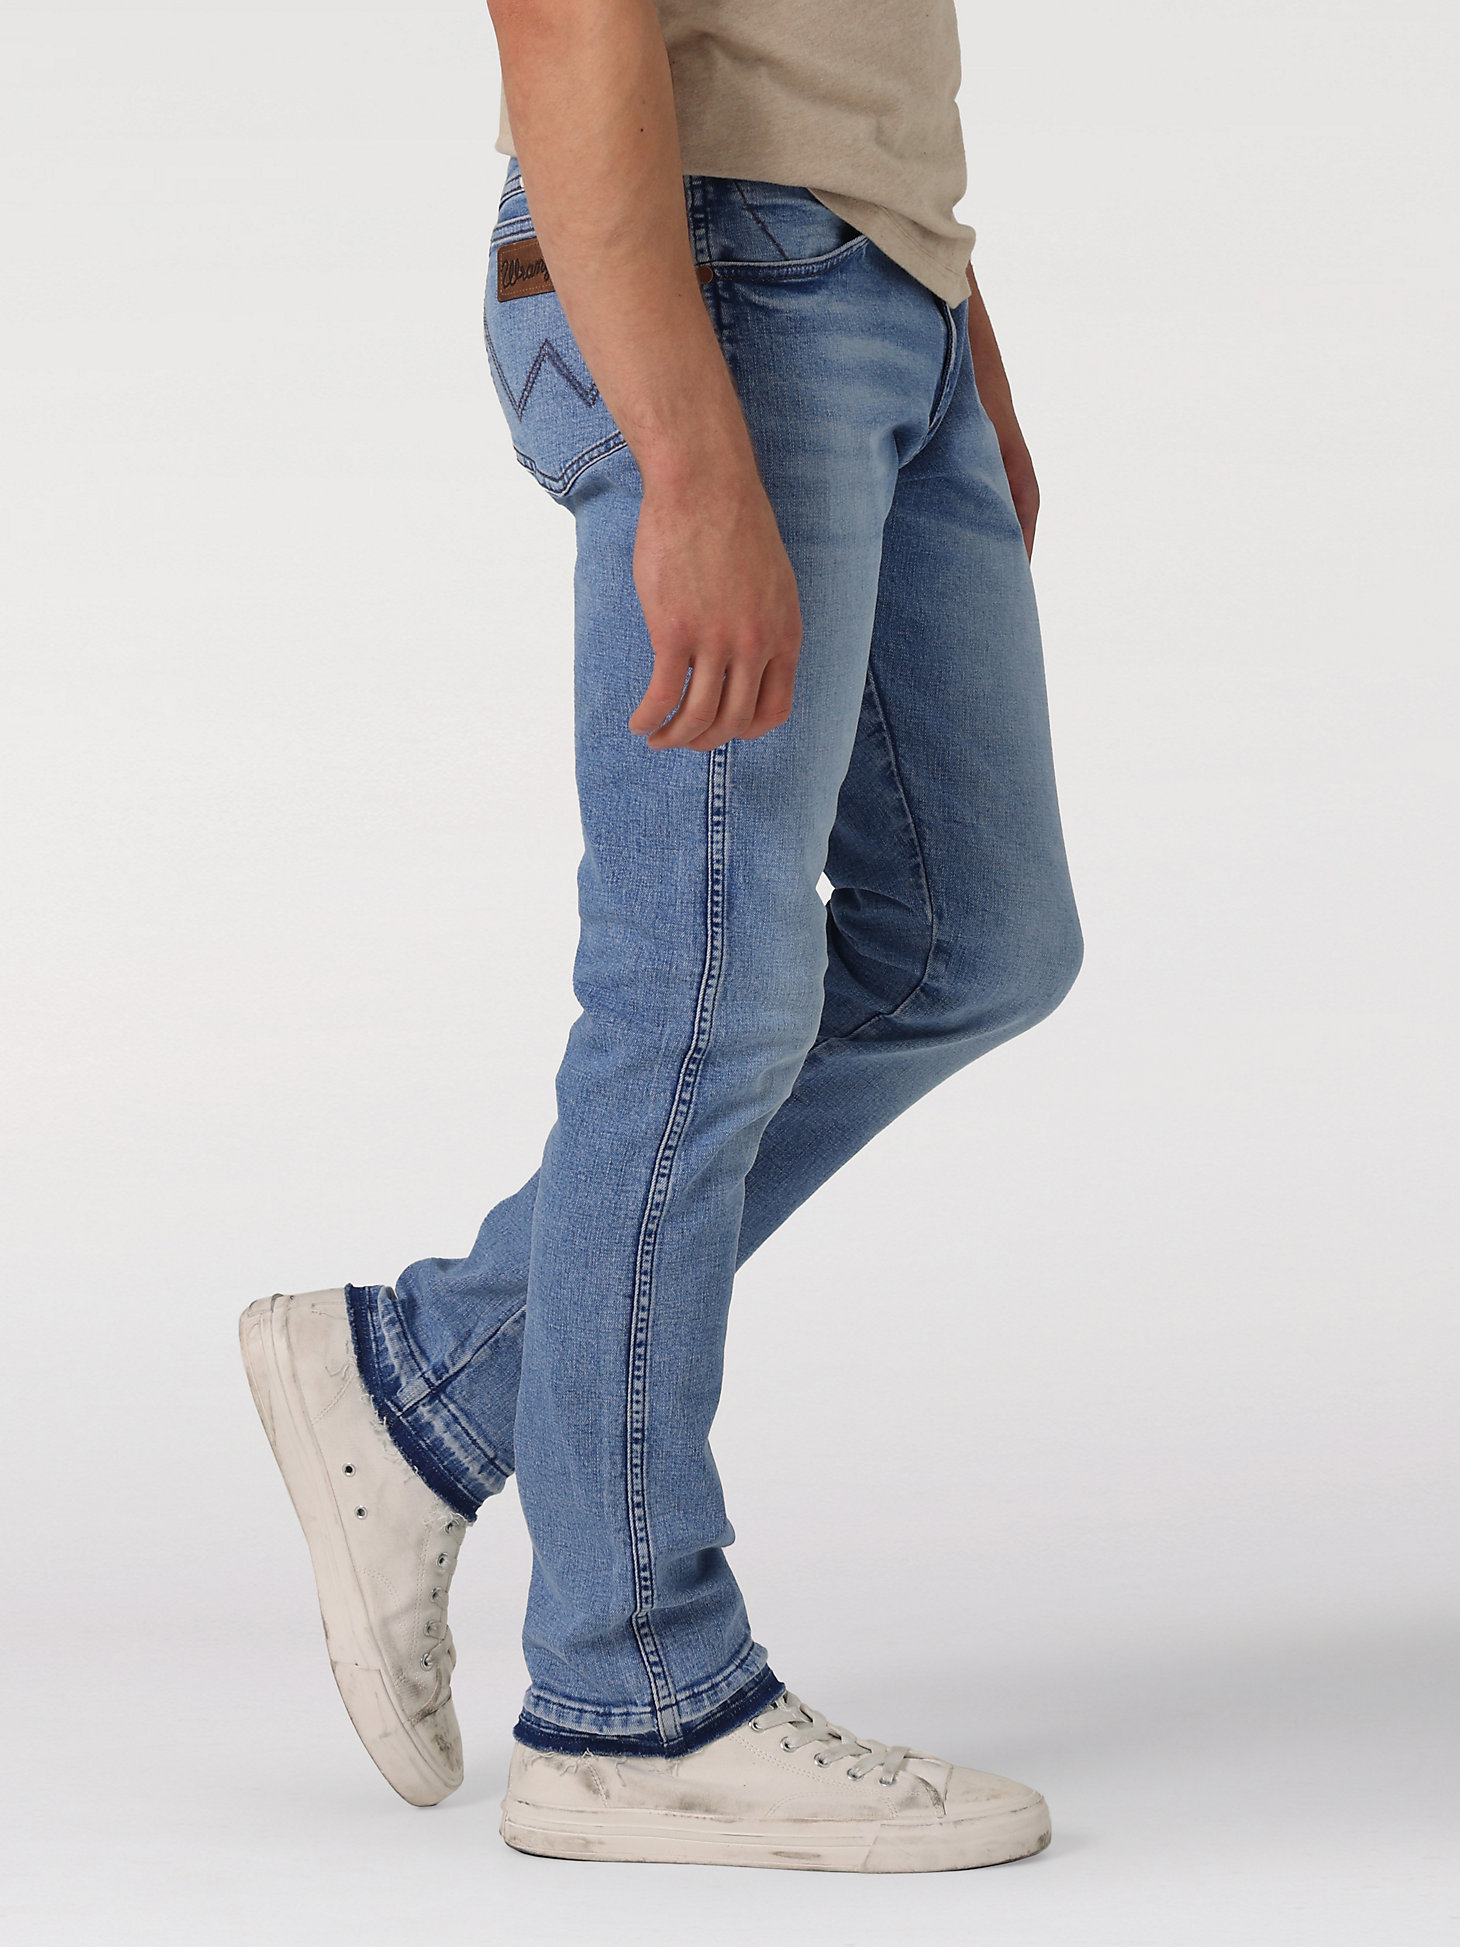 Men's Slim Fit Jean in Come Undone alternative view 2